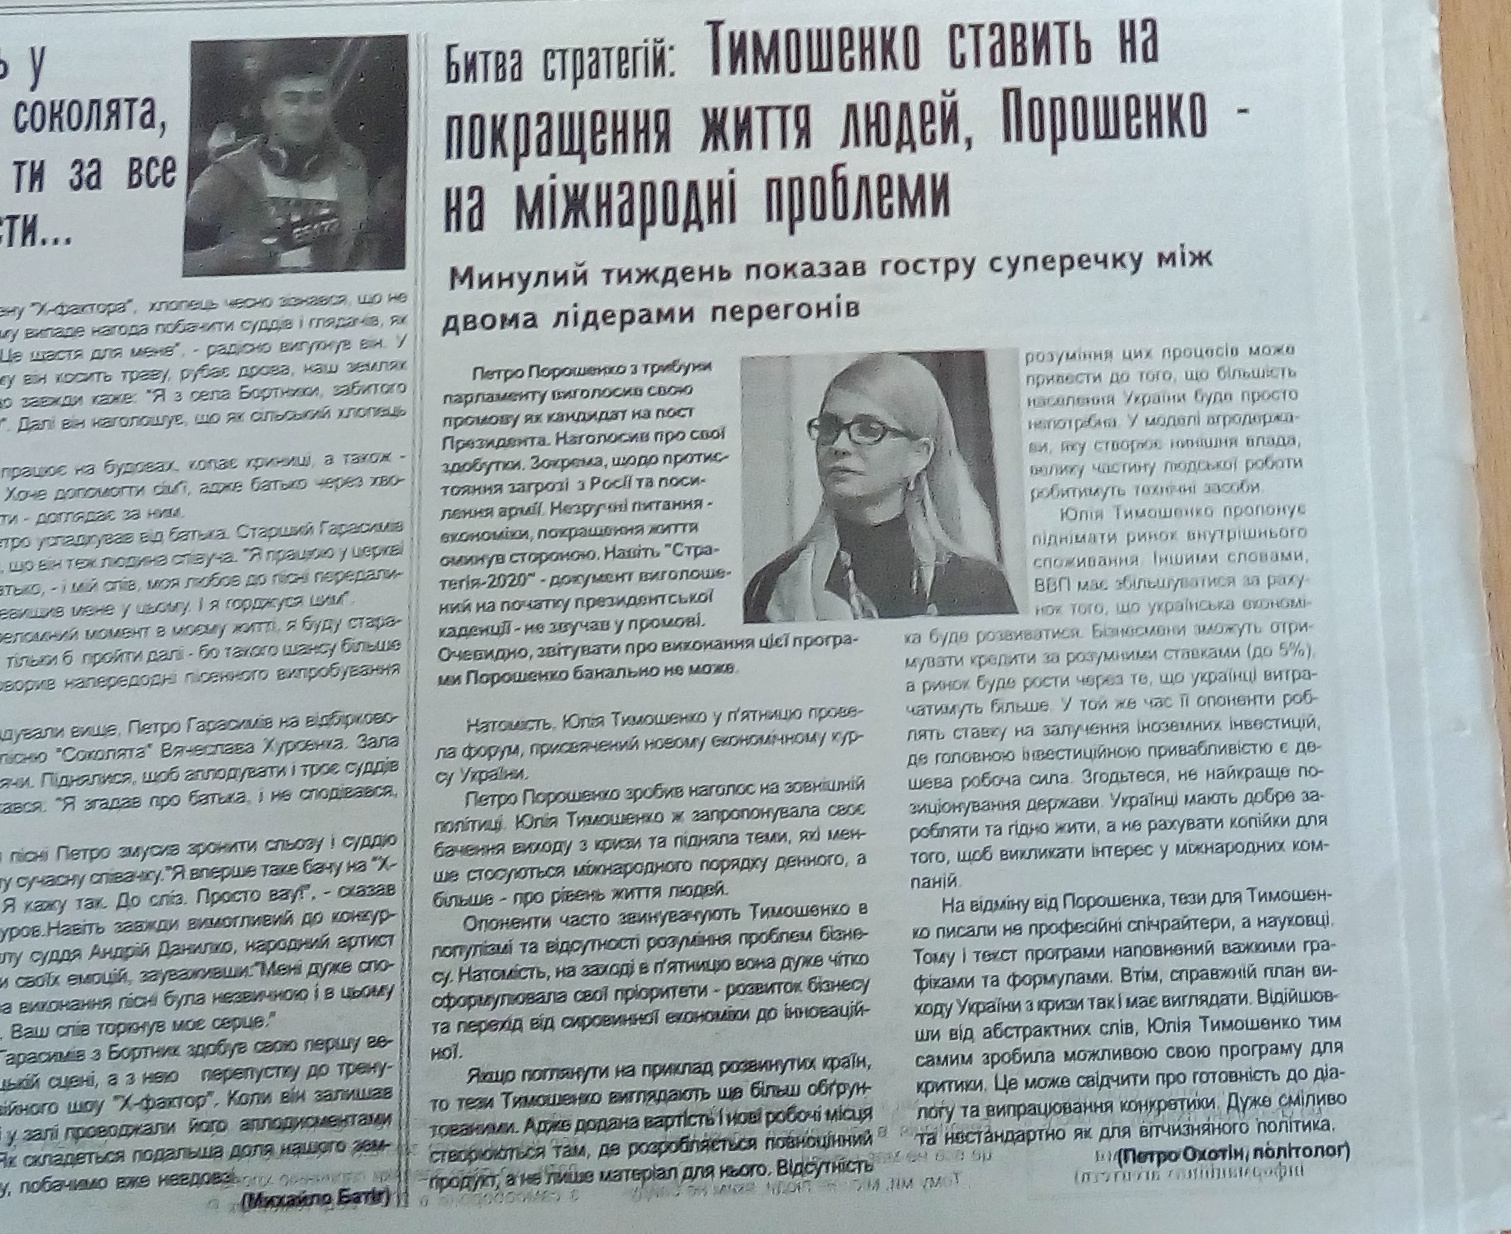 24.12.18. Poroshenko black piar gazety 1